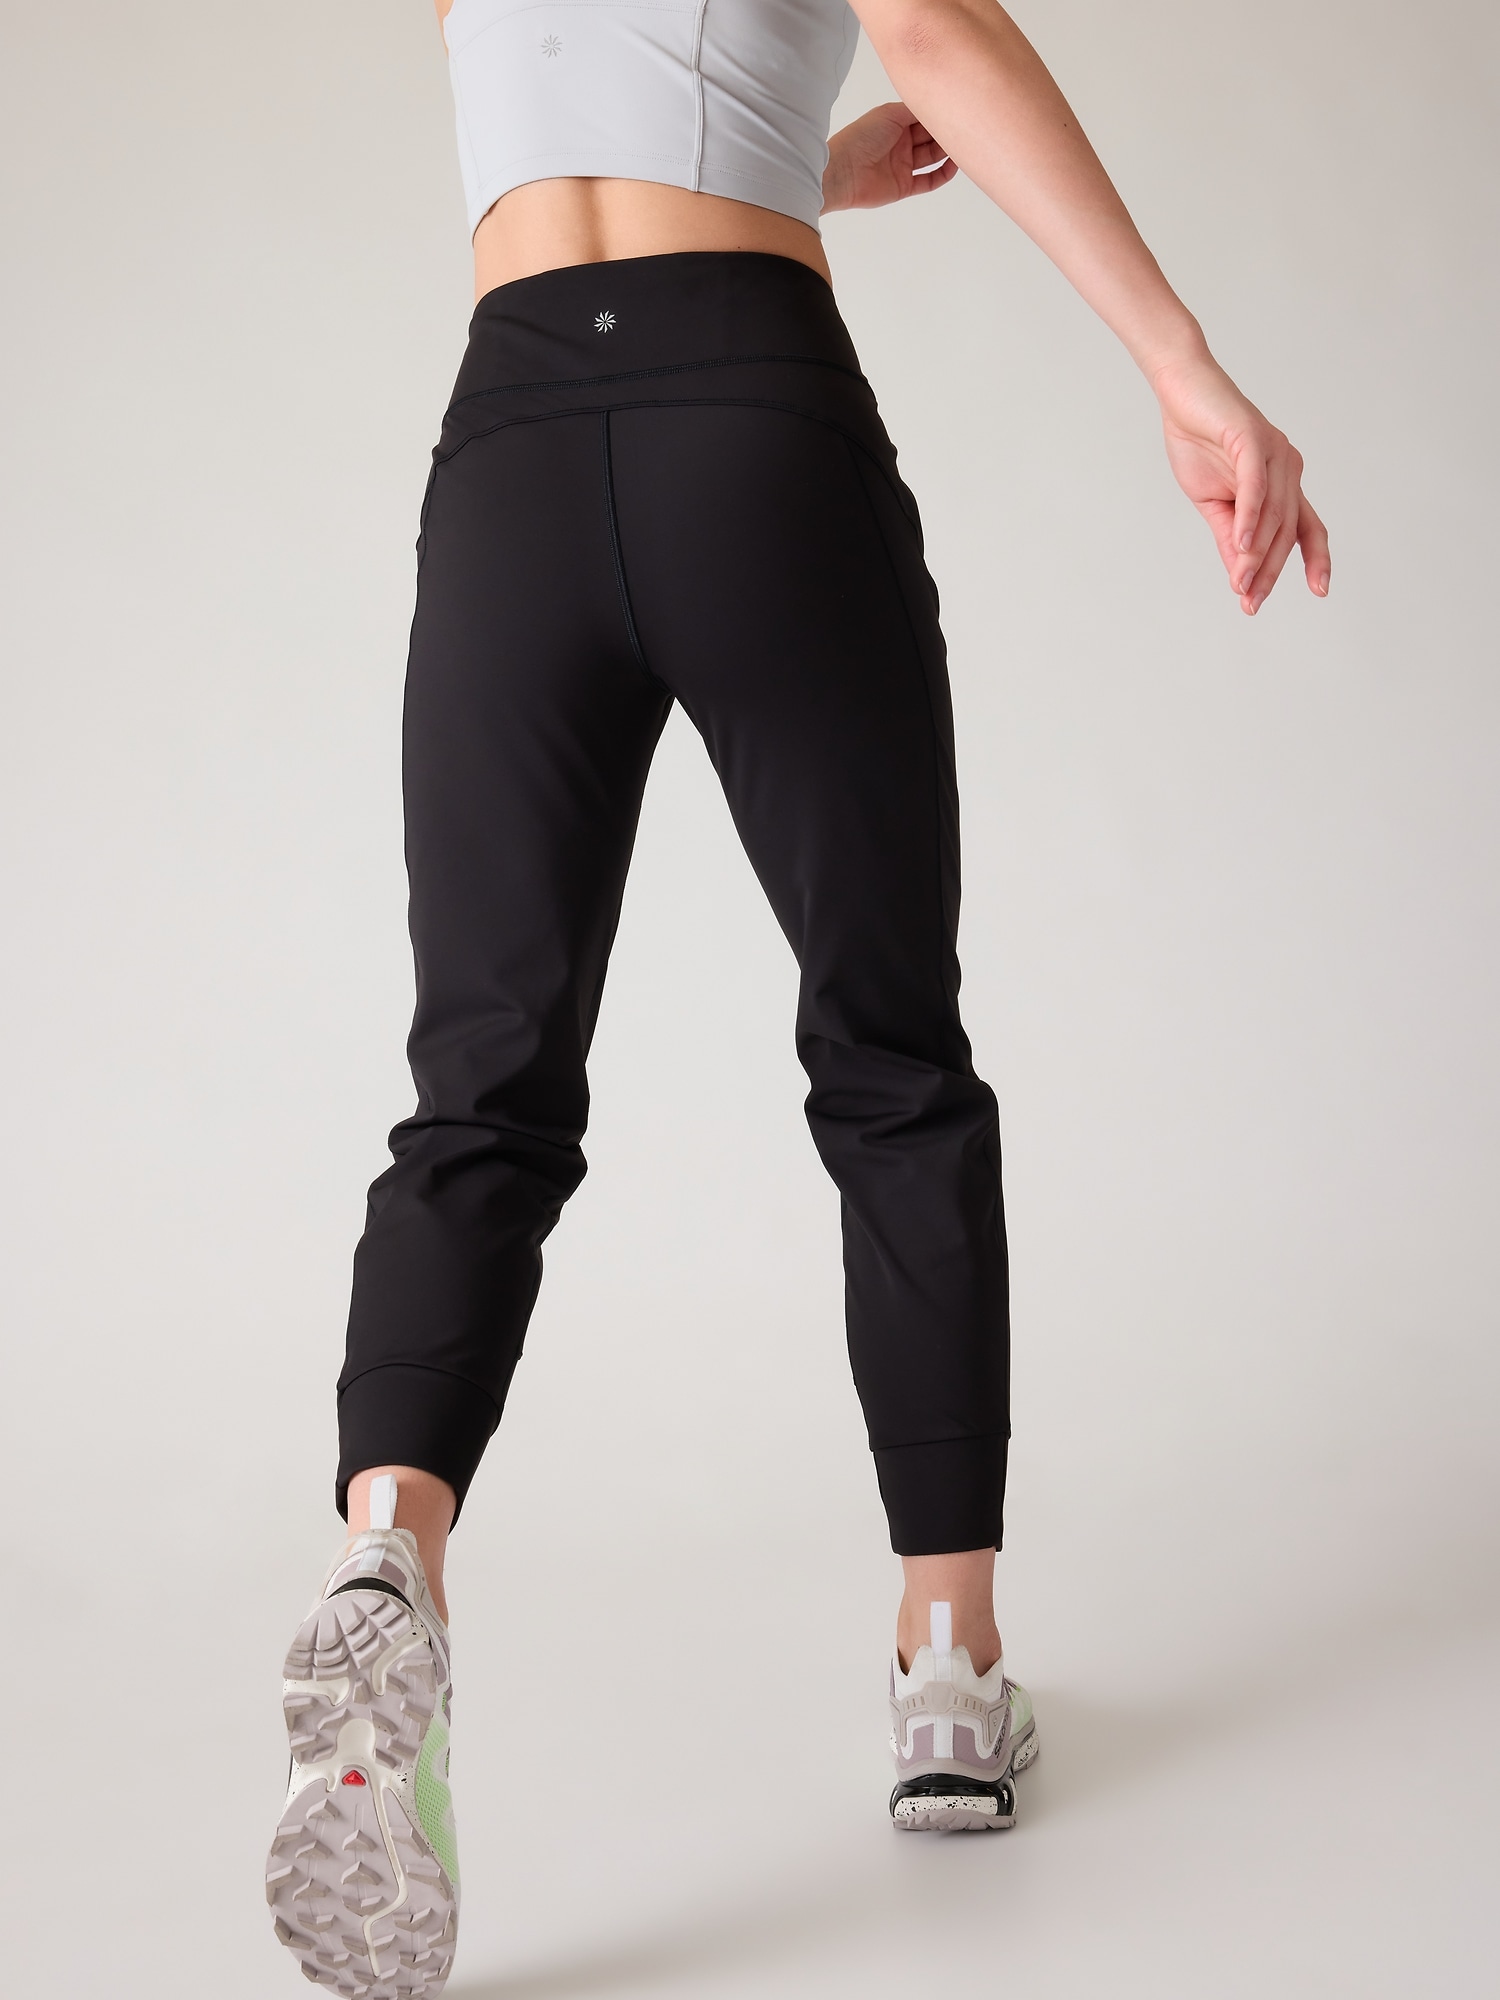 Lululemon jogger leggings, Black leggings with